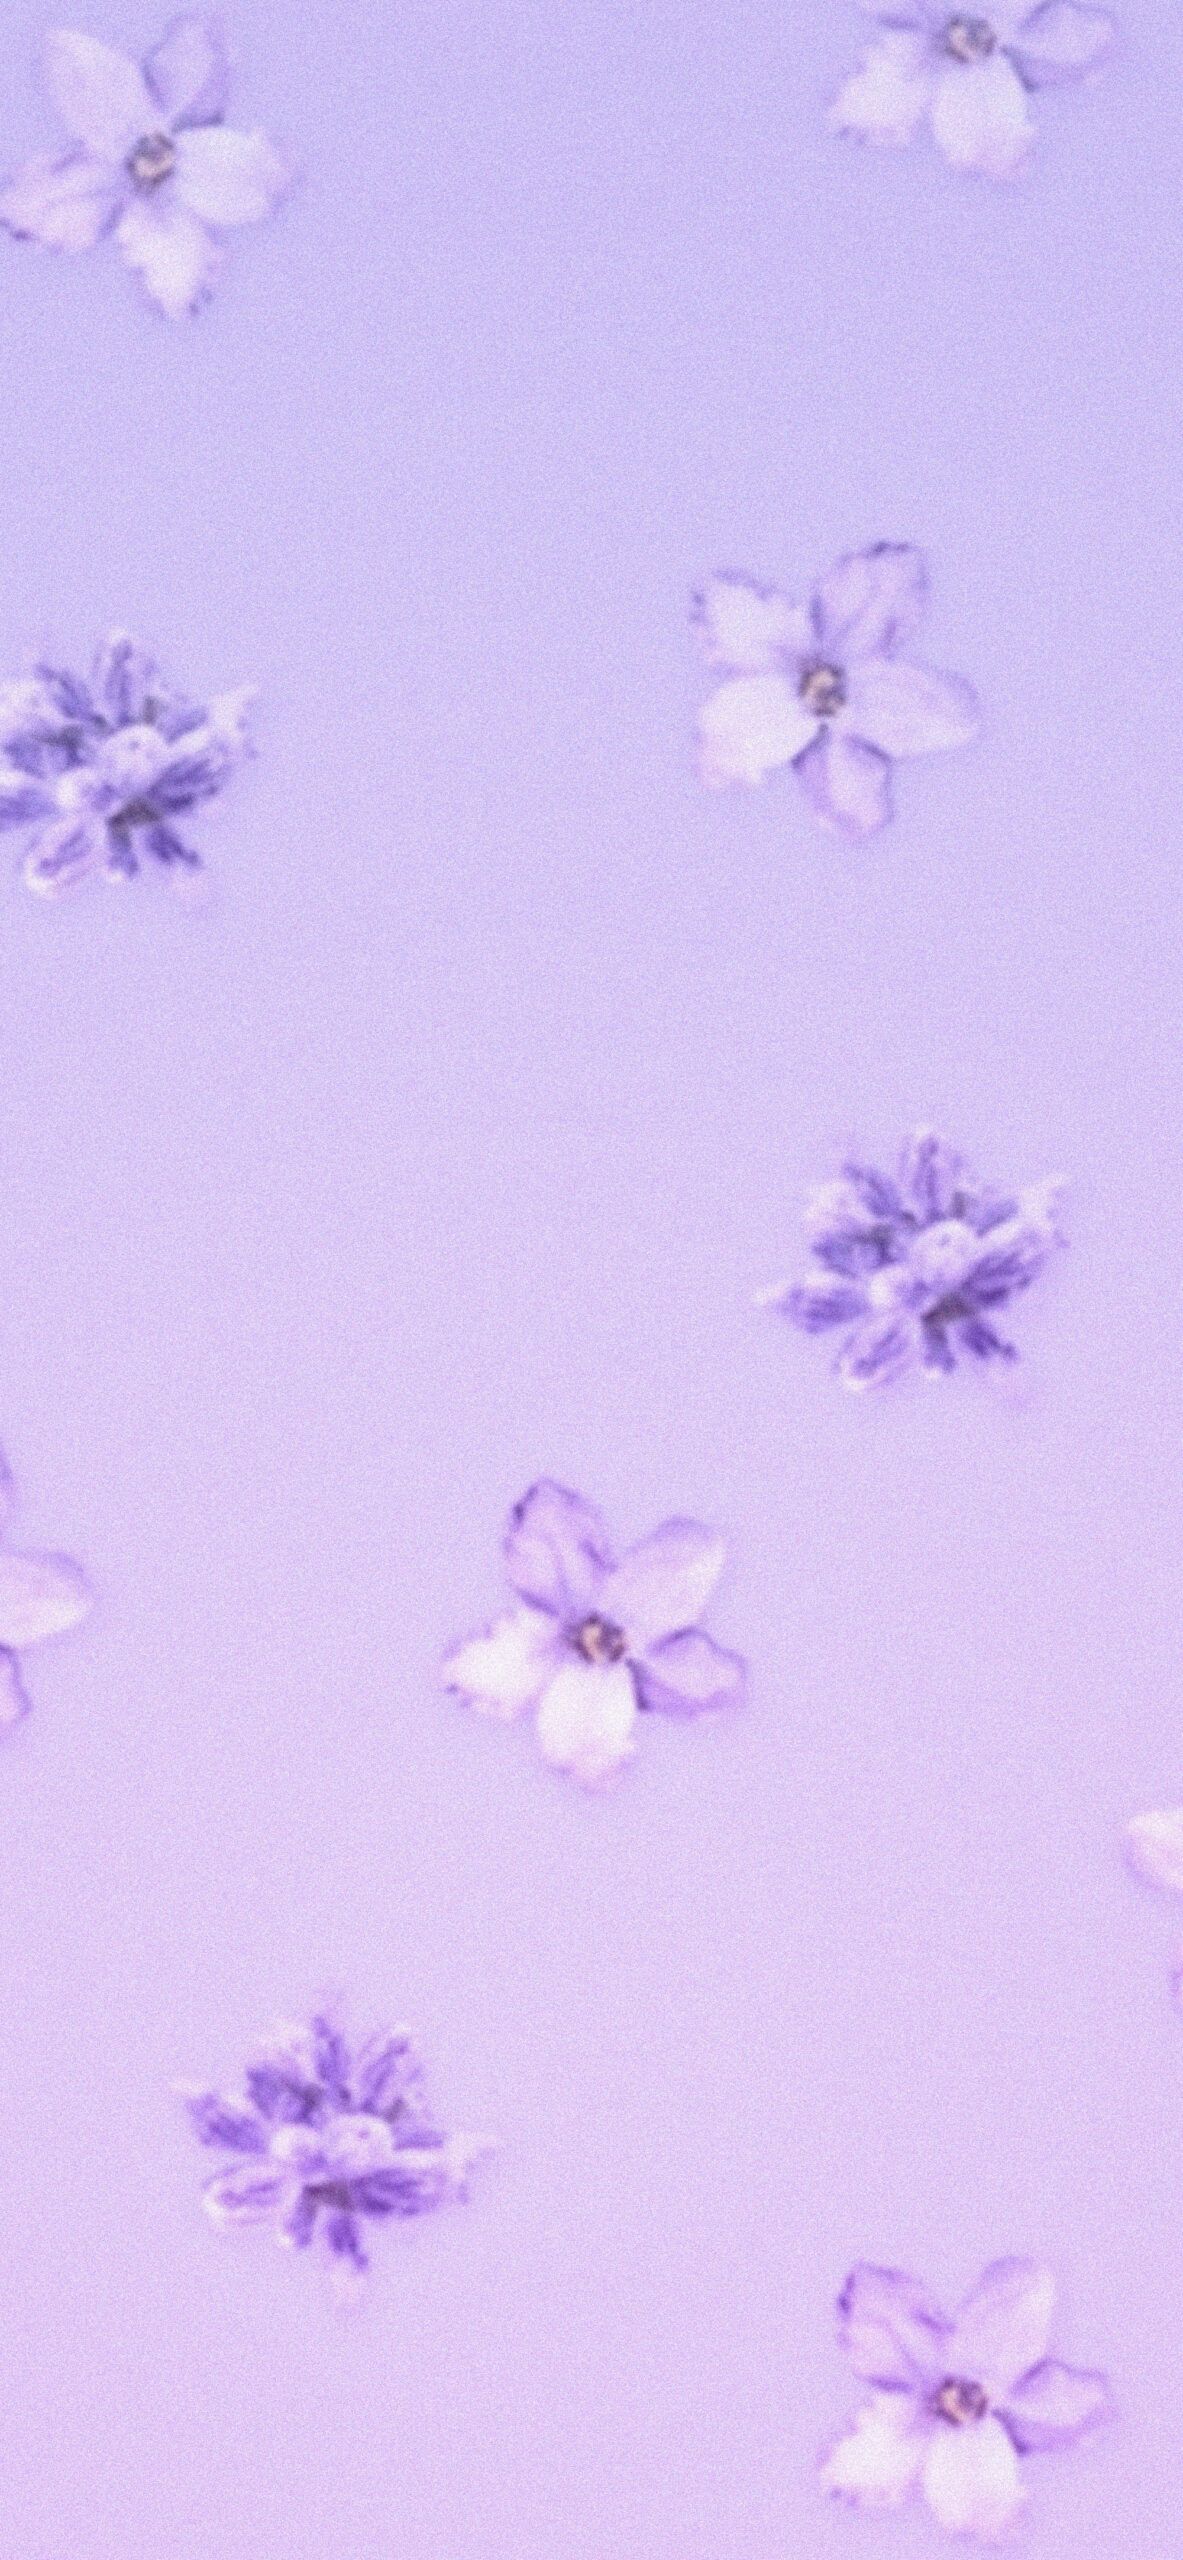 Aesthetic Lavender Wallpaper Lavender Aesthetic Wallpaper iPhone